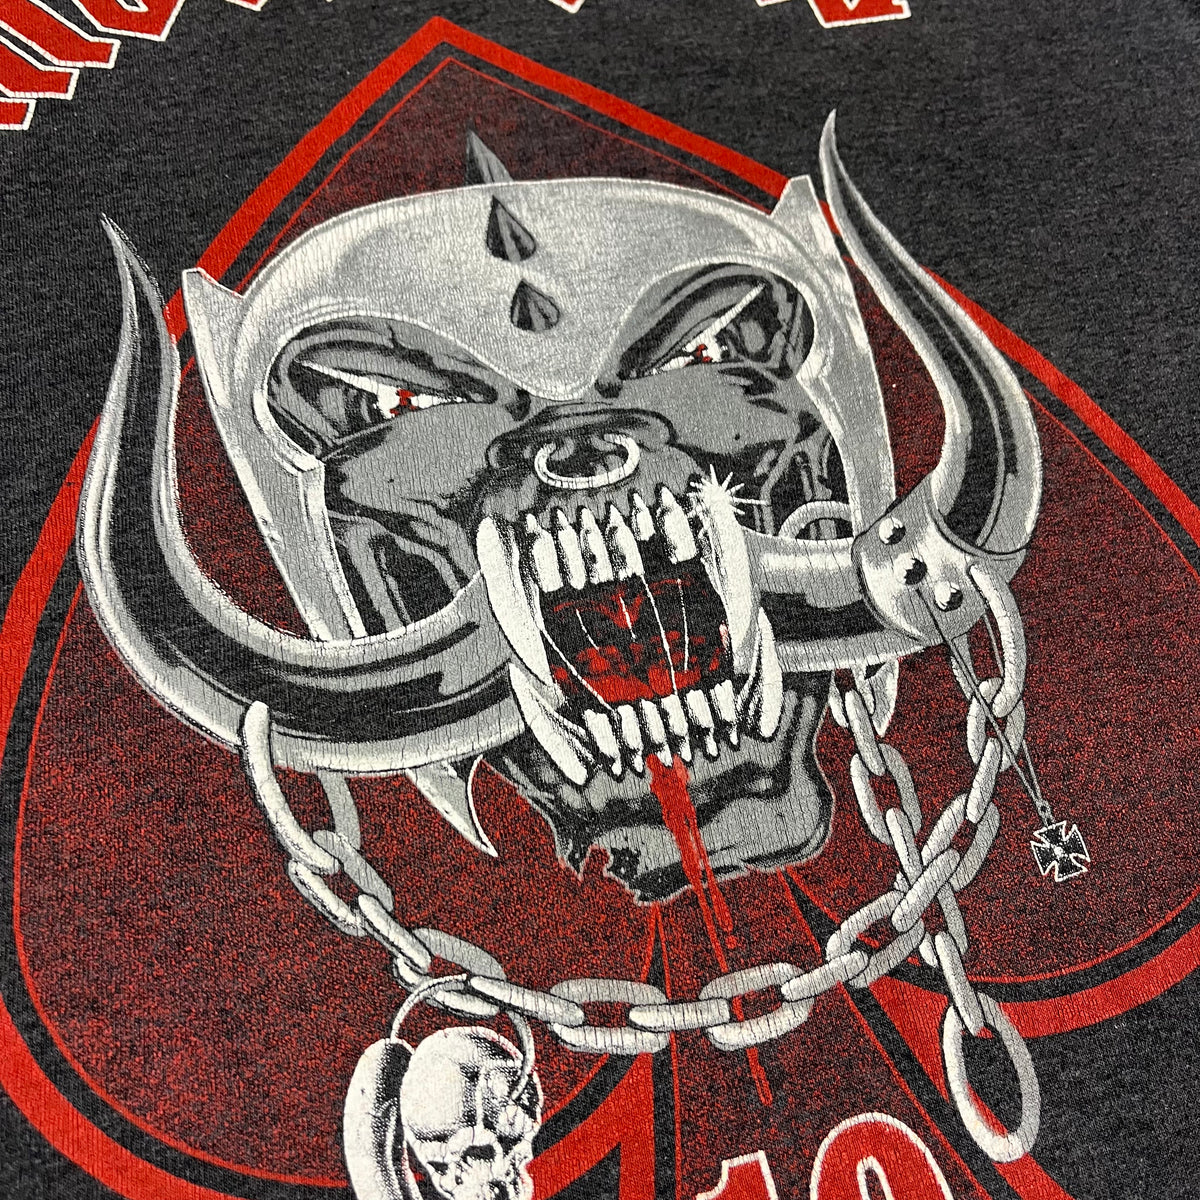 Vintage Motörhead &quot;10th Anniversary&quot; World Tour T-Shirt